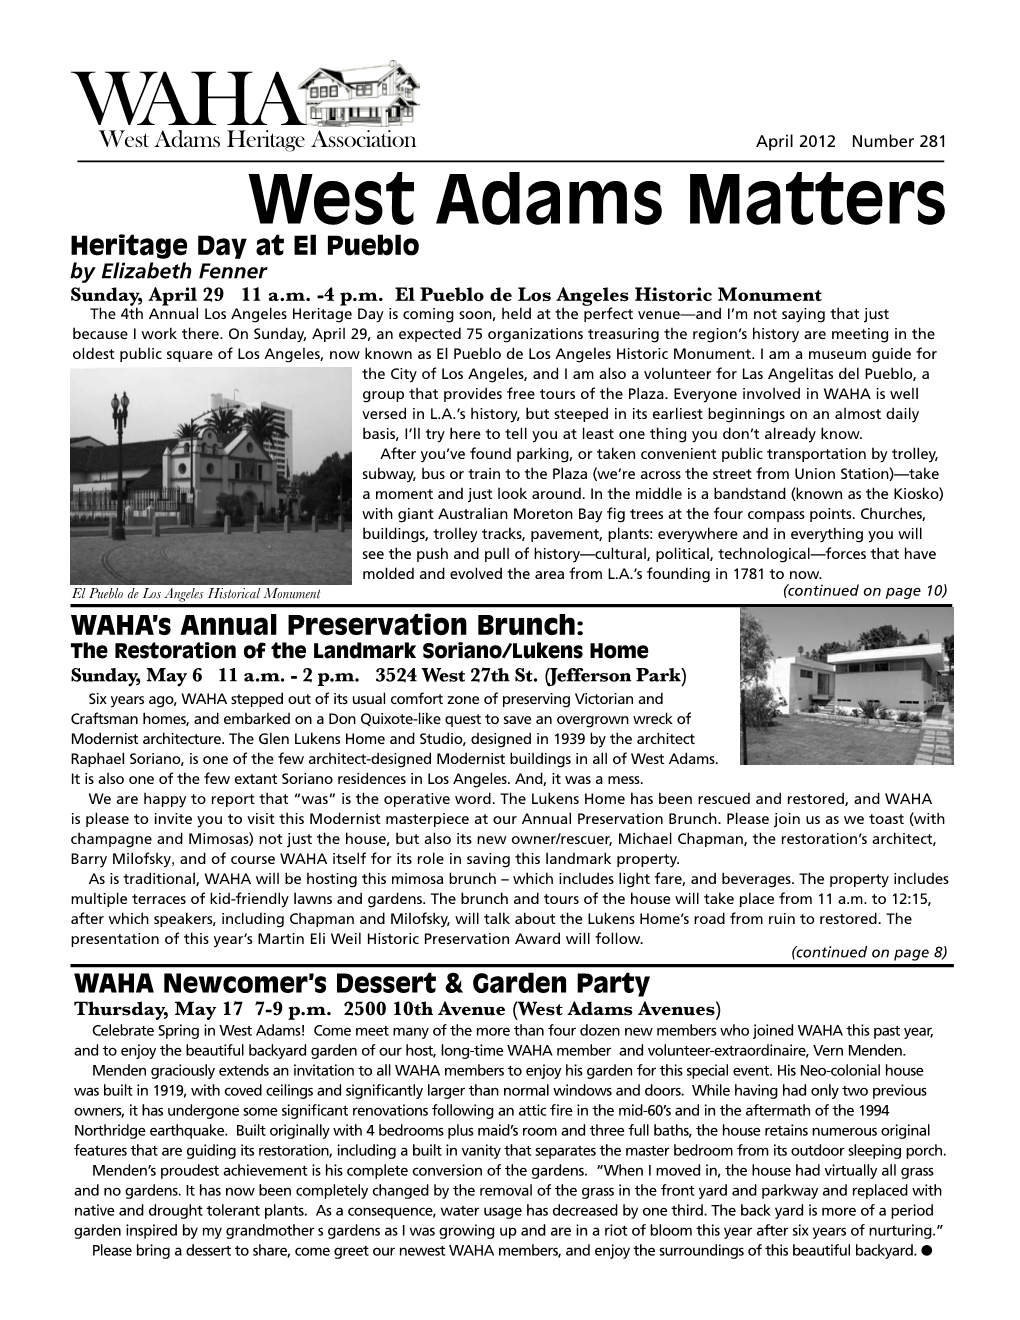 West Adams Matters Heritage Day at El Pueblo by Elizabeth Fenner Sunday, April 29 11 A.M